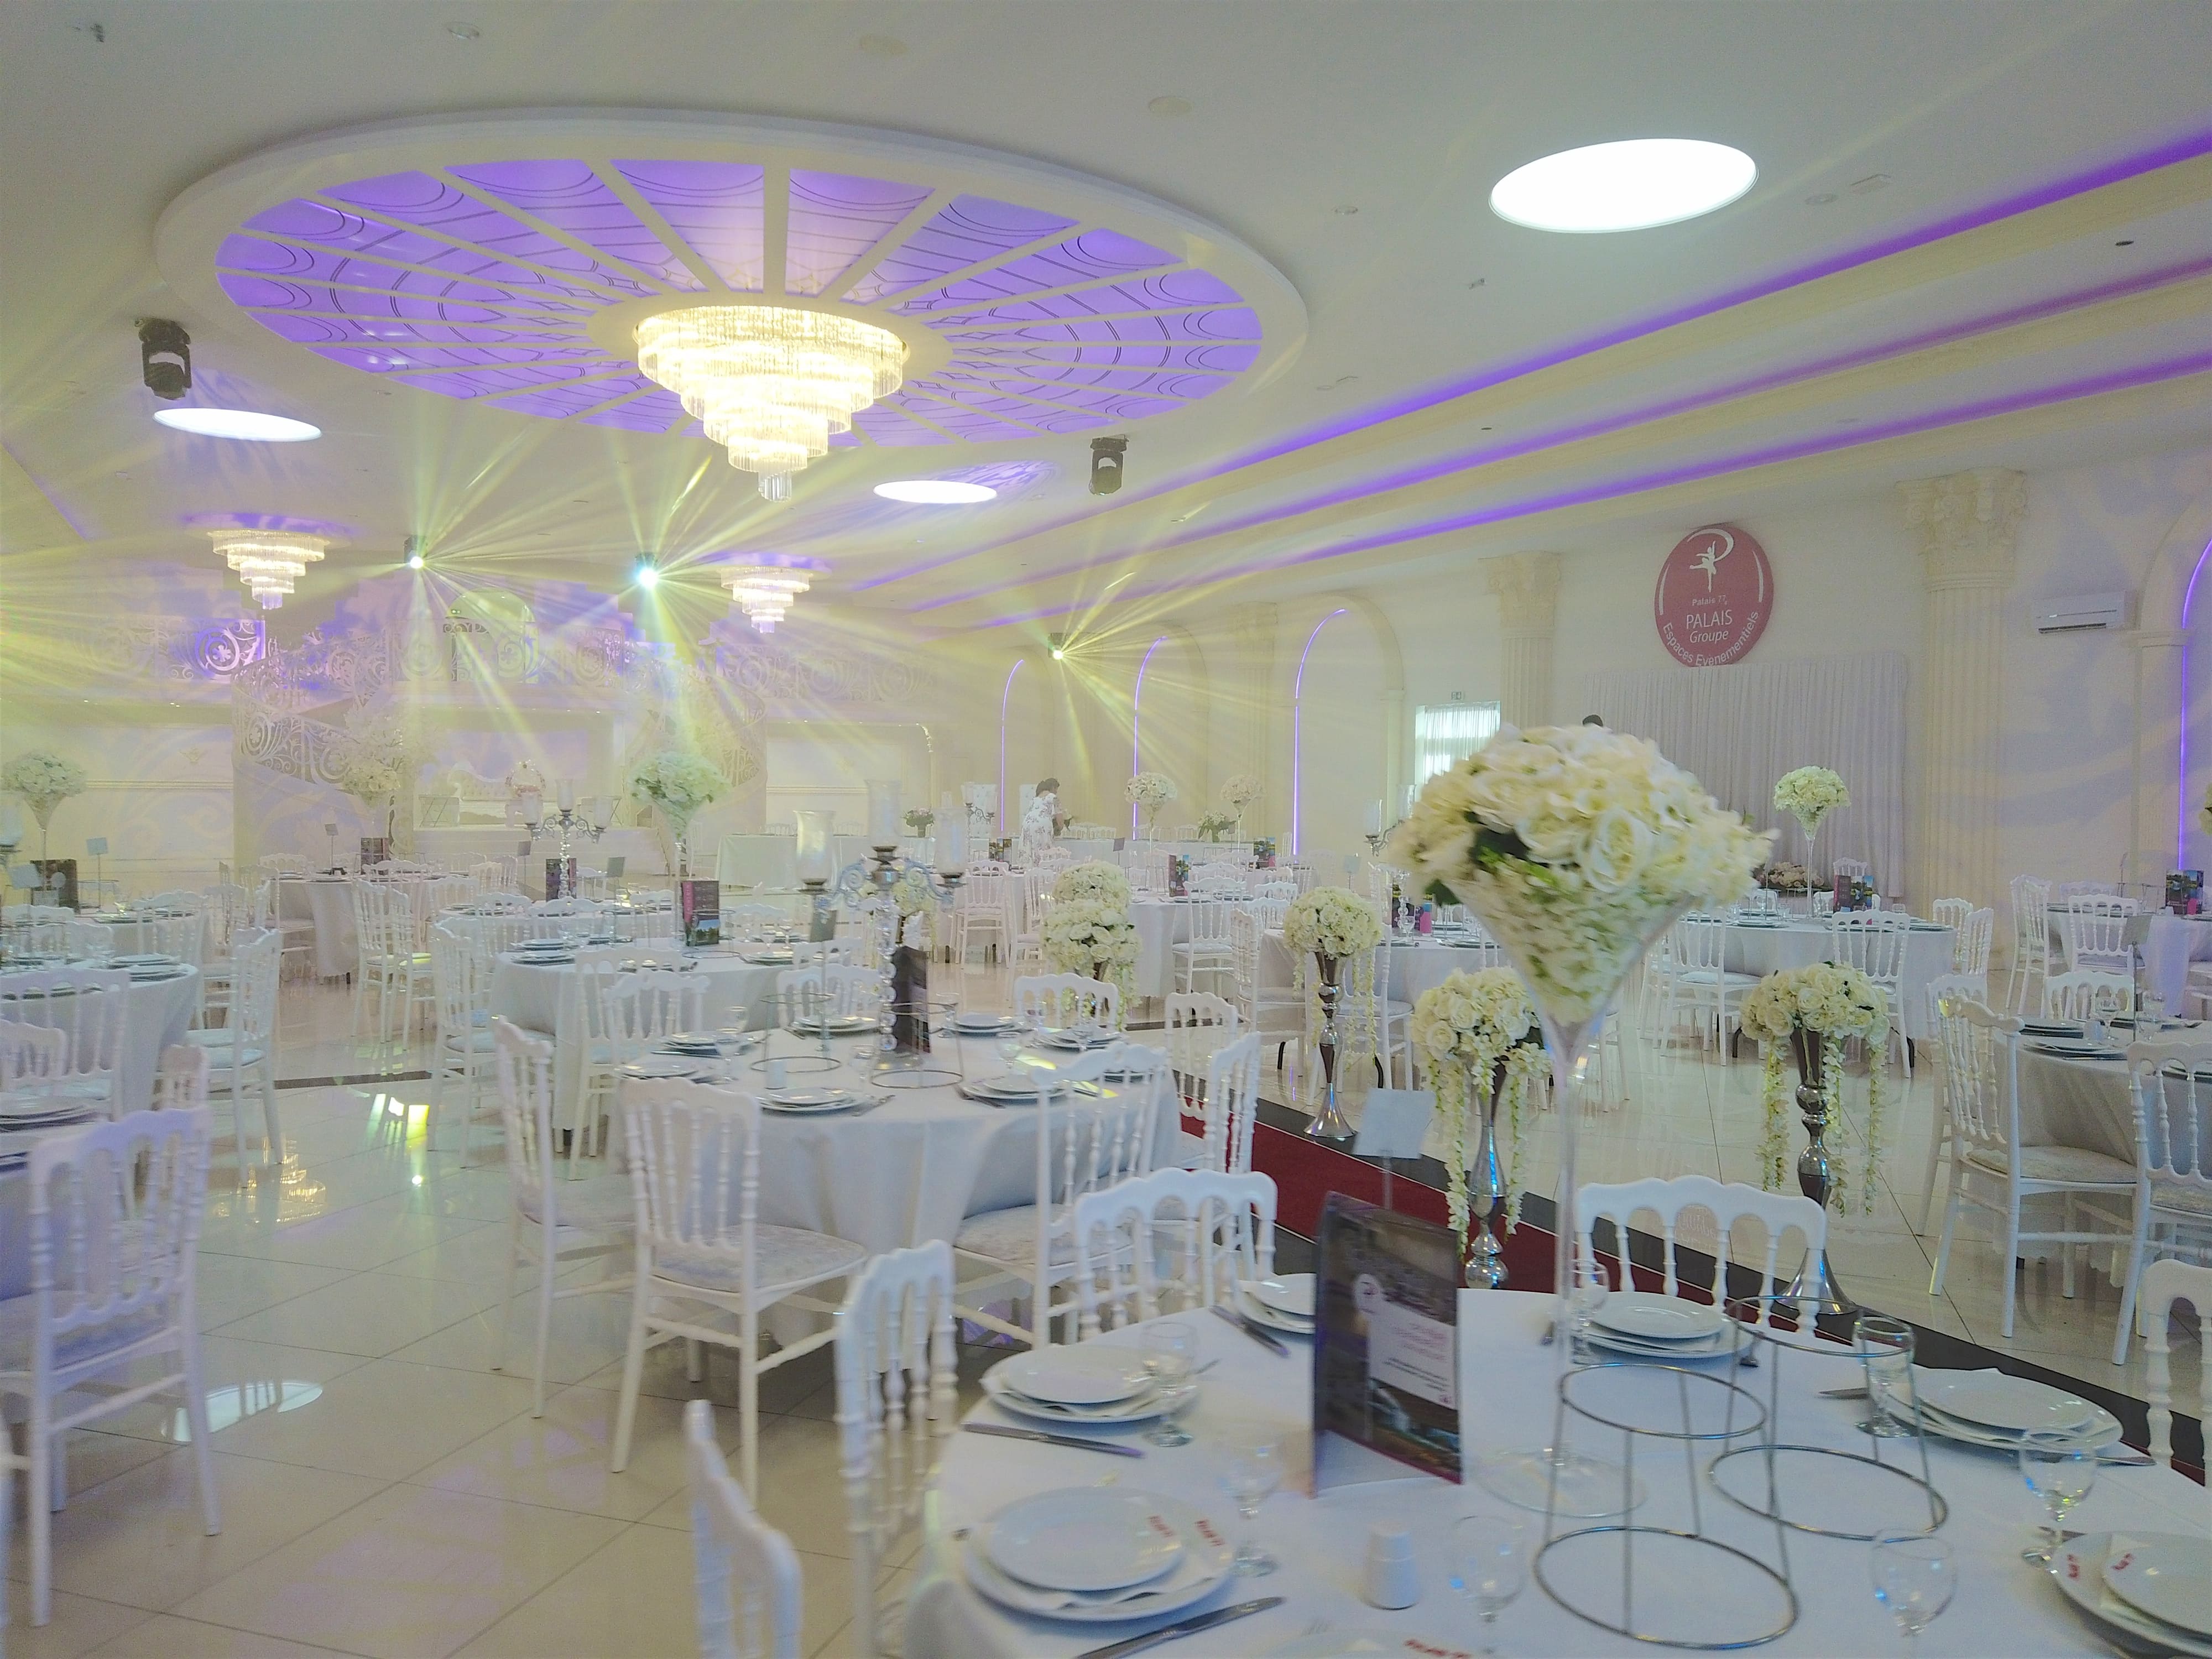 Salle décoré avec des luminaires au plafond, des tables et chaise blanche ainsi que des couverts.